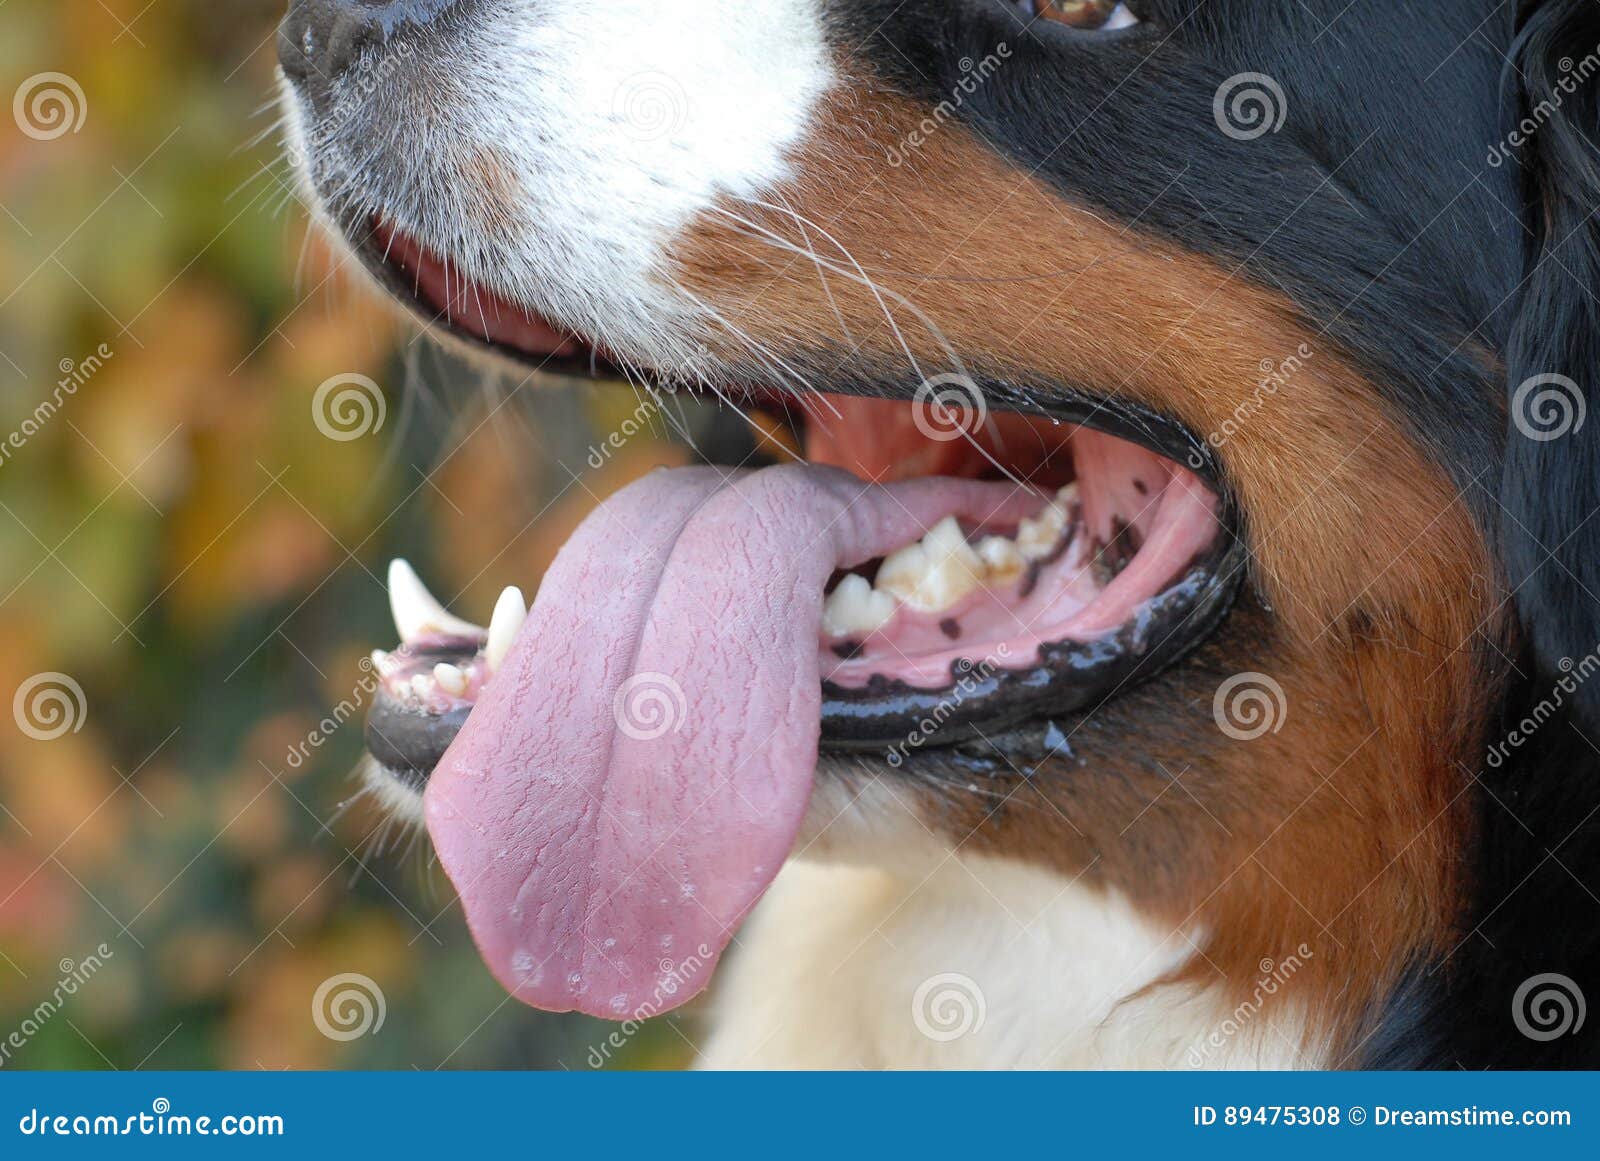 Почему собака часто открывает рот. Собака с высунутым языком. Собака дышит с открытым ртом. Собака дышит высунув язык. Иллюстрации щенок с высунутым языком.